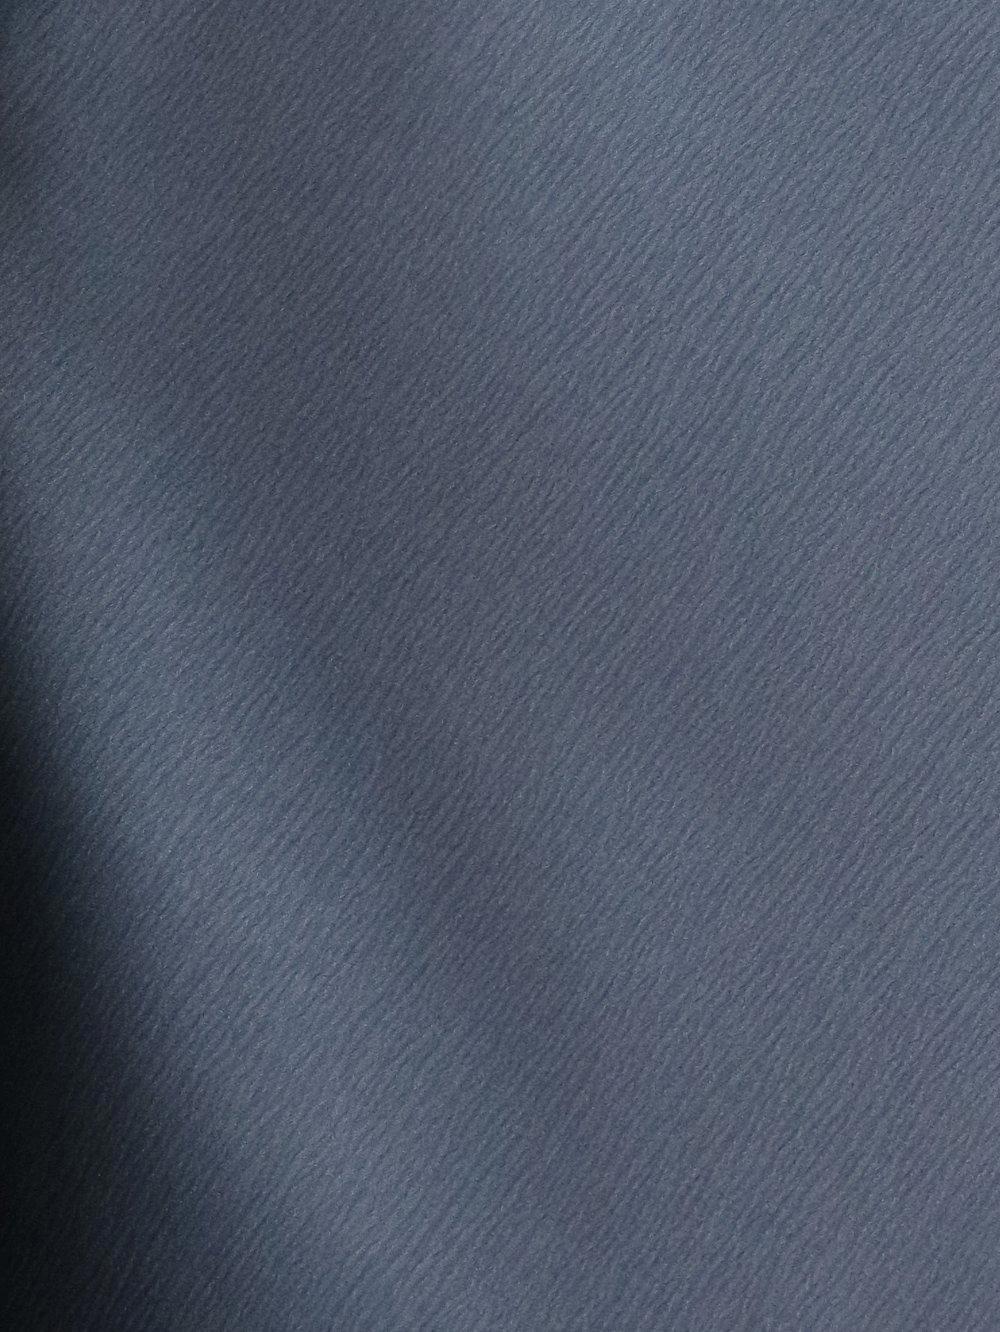 【日本製】最高級色無地着物 衿なし あさぎ色[Lサイズ][13]画像